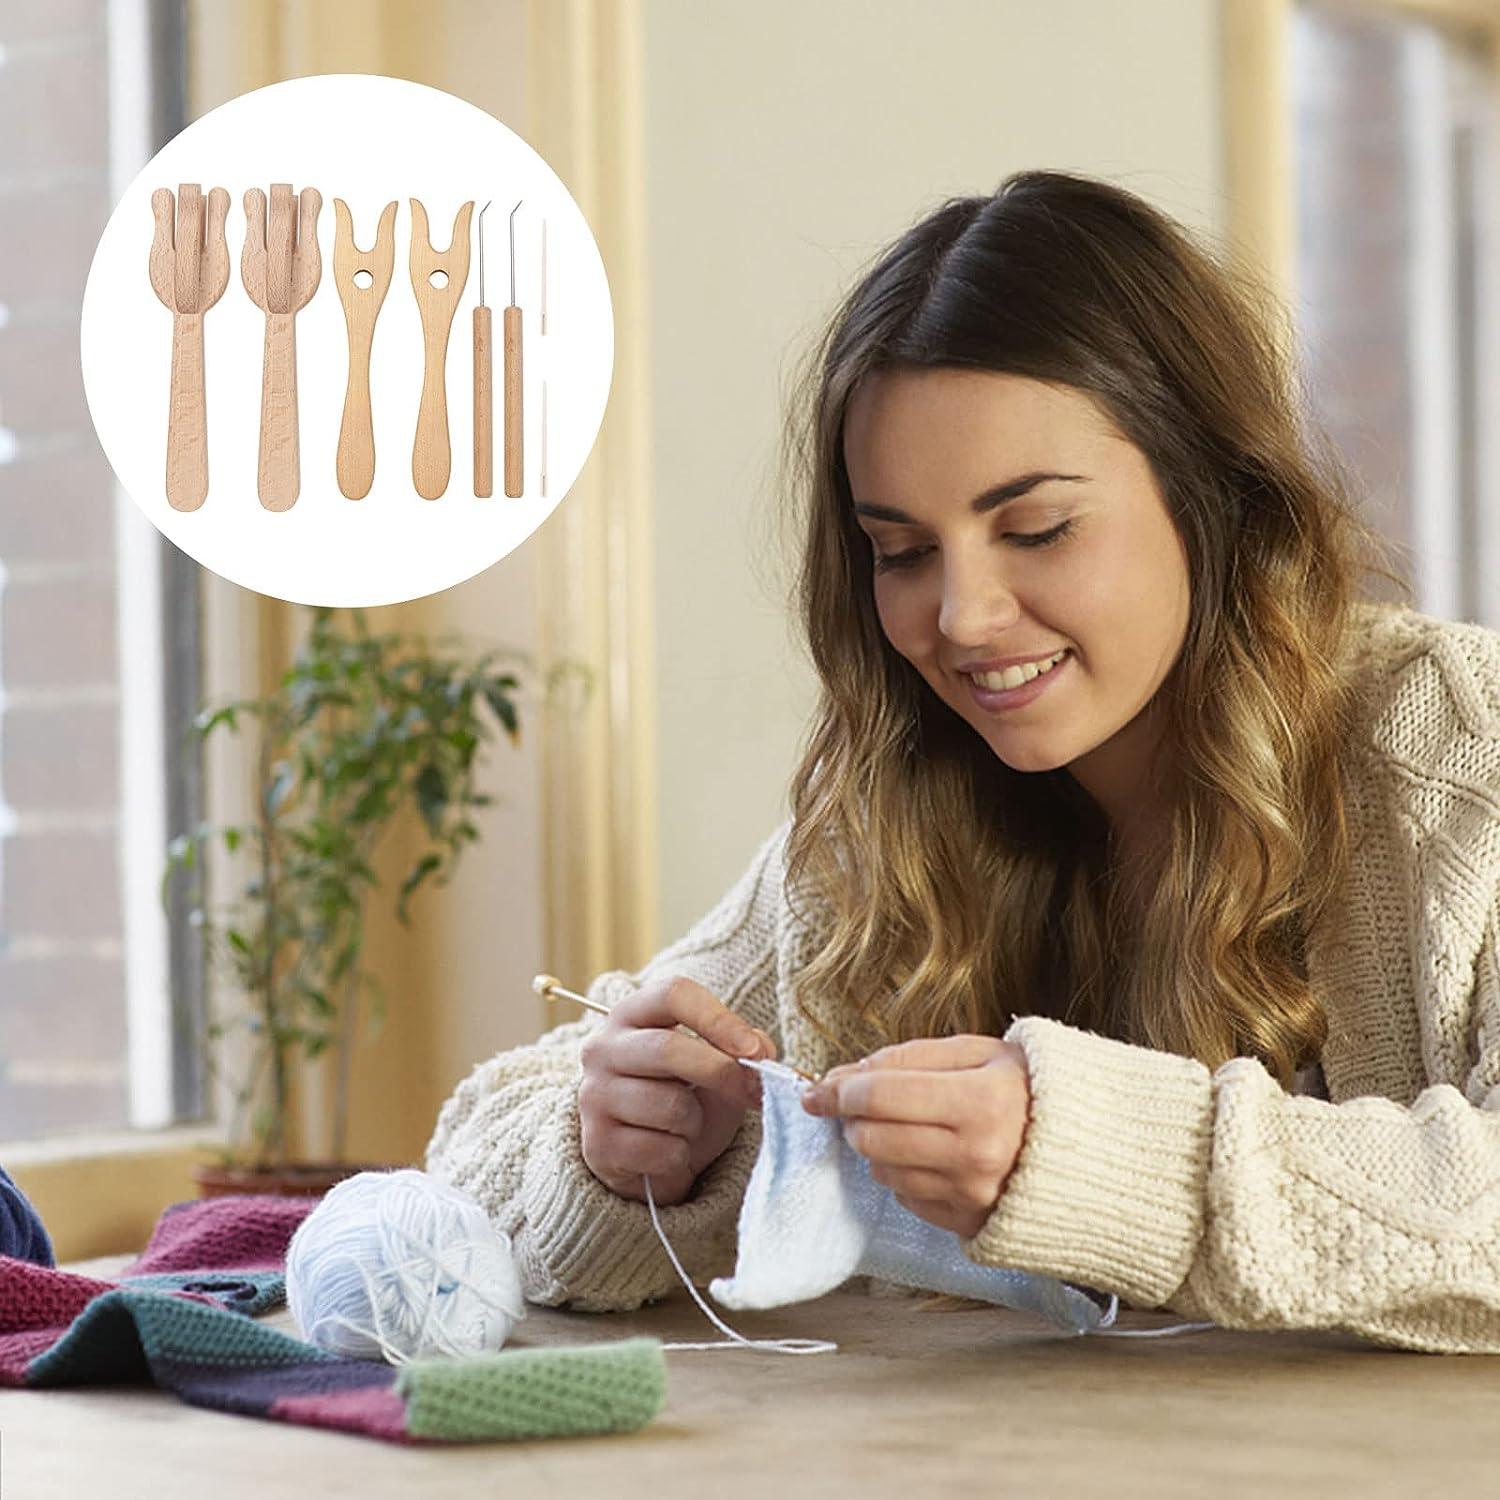 8Pcs Crochet Kit for Beginners Complete Crochet Knitting Kit